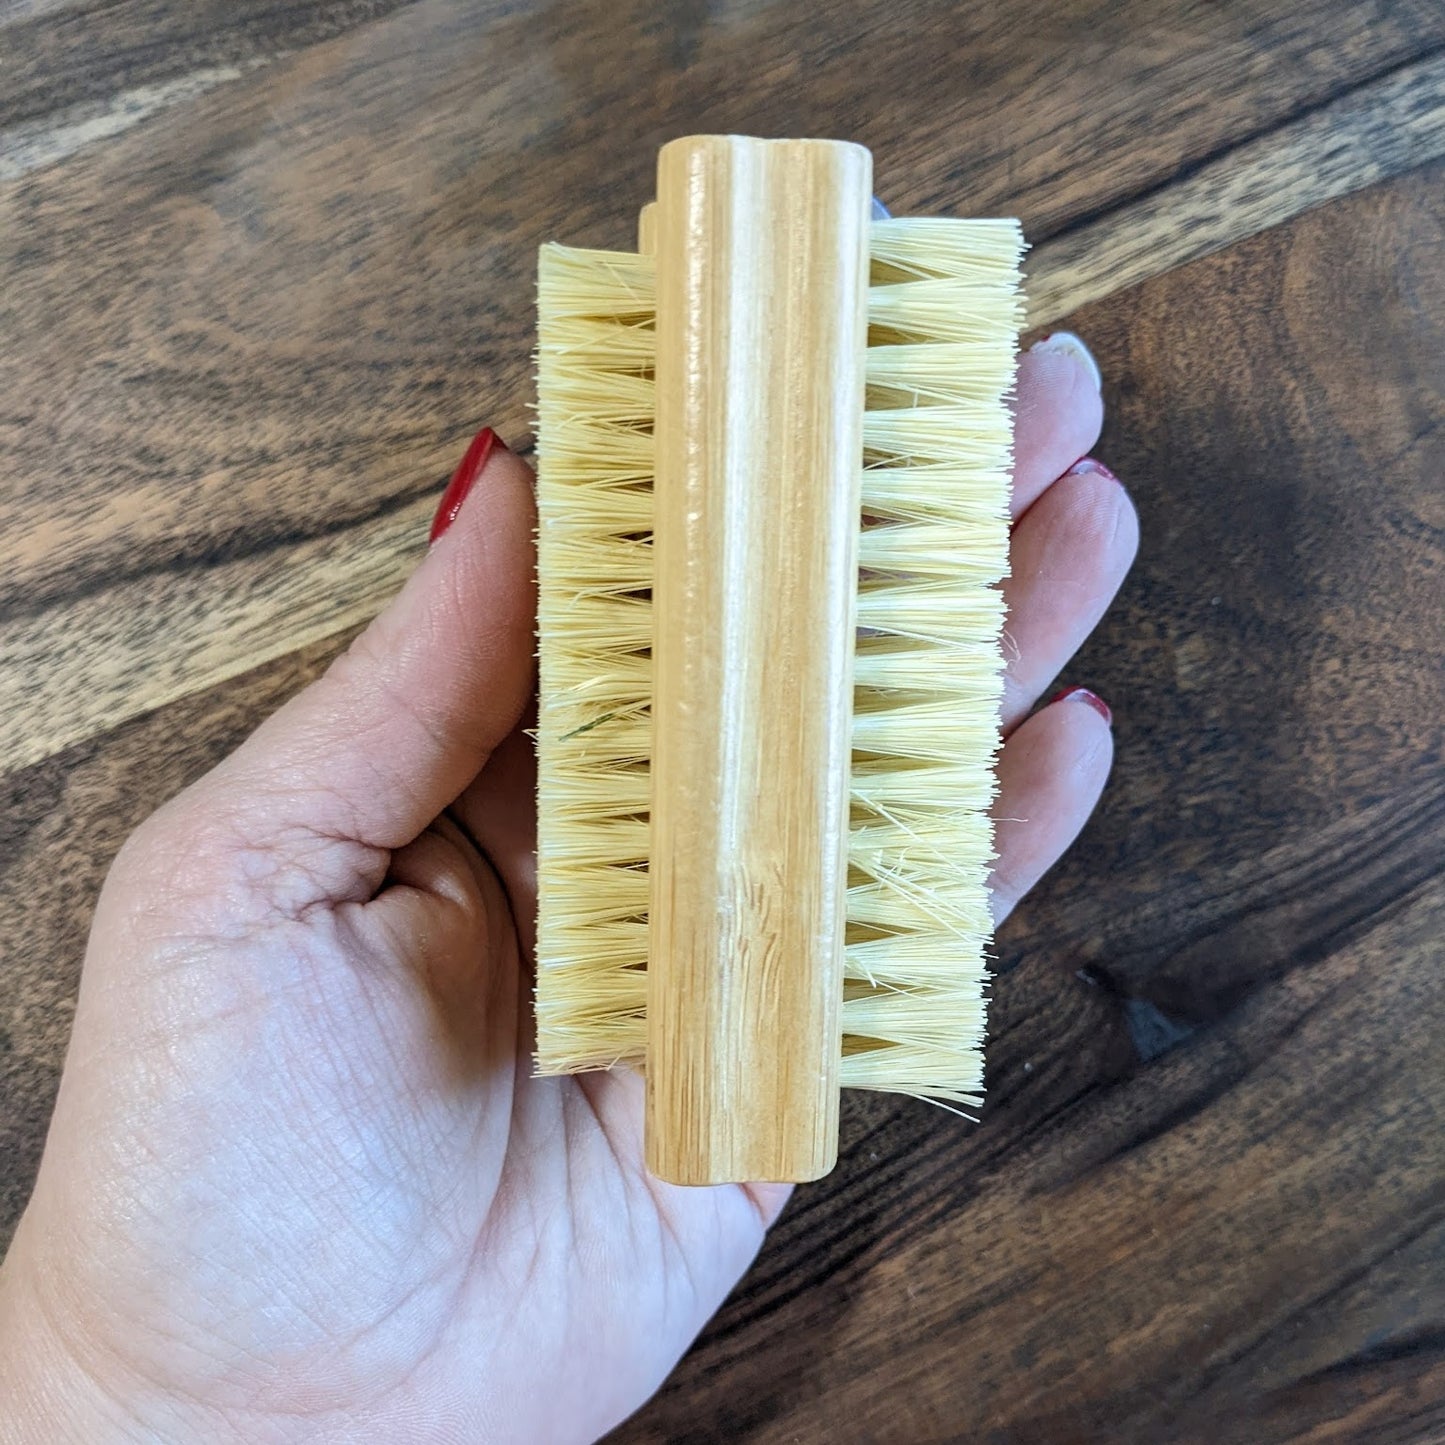 Image of Nail Brush made of Bamboo